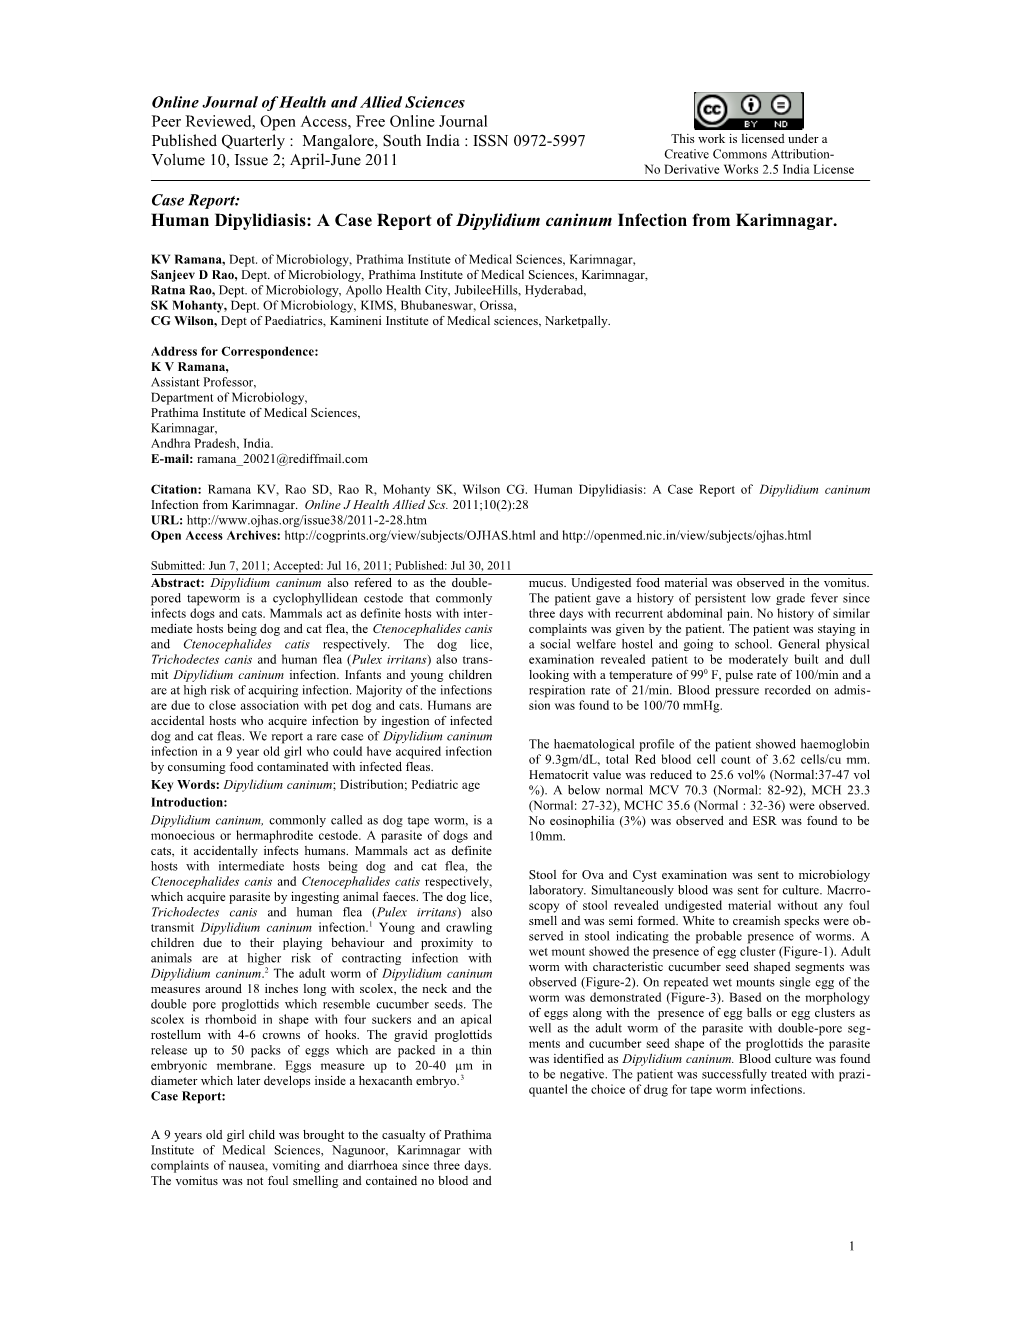 A Case Report of Dipylidium Caninum Infection from Karimnagar